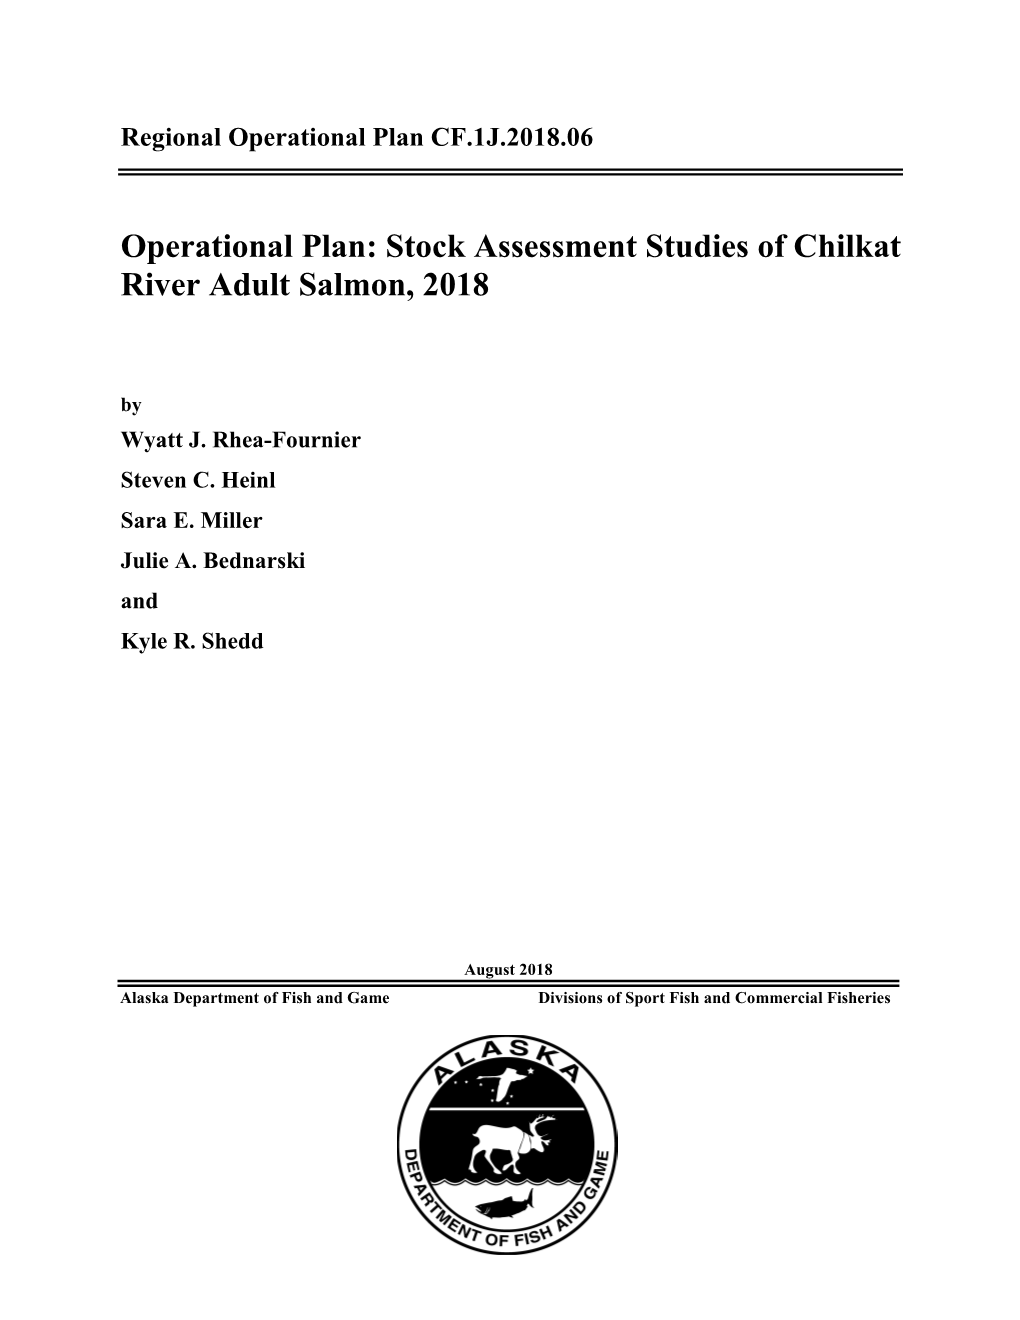 Stock Assessment Studies of Chilkat River Adult Salmon, 2018. Alaska Department of Fish and Game, Regional Operational Plan ROP.CF.1J.2018.06, Douglas